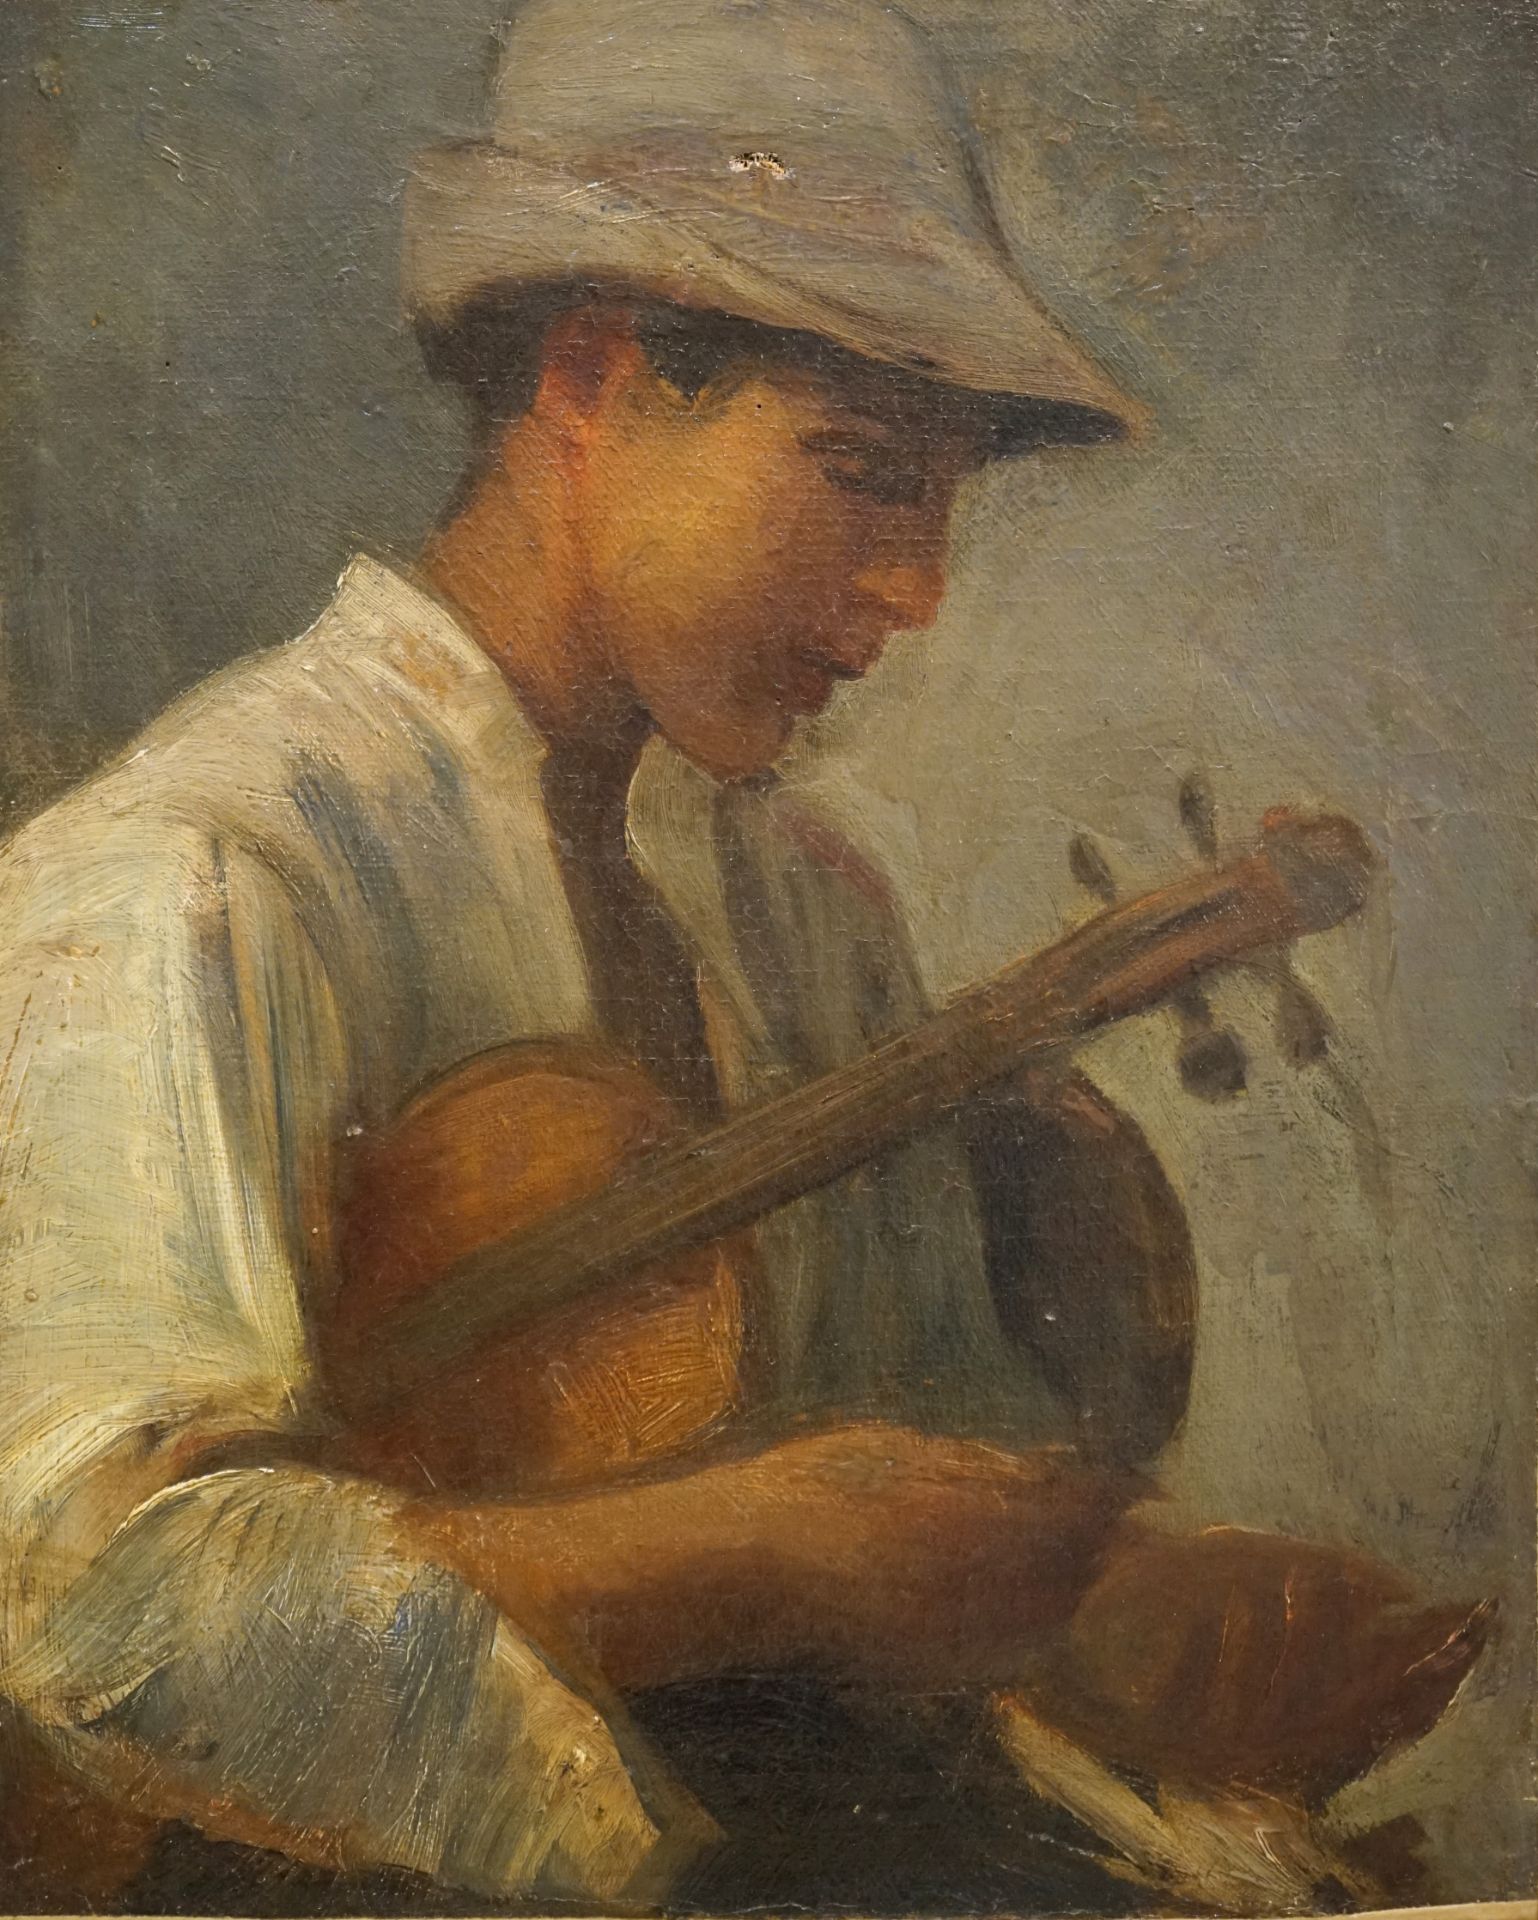 Hüftbildnis eines Gitarrenspielers, 19. Jhd.,grober Pinselstrich, Öl auf Leinwand, Maße 31 x 38cm,